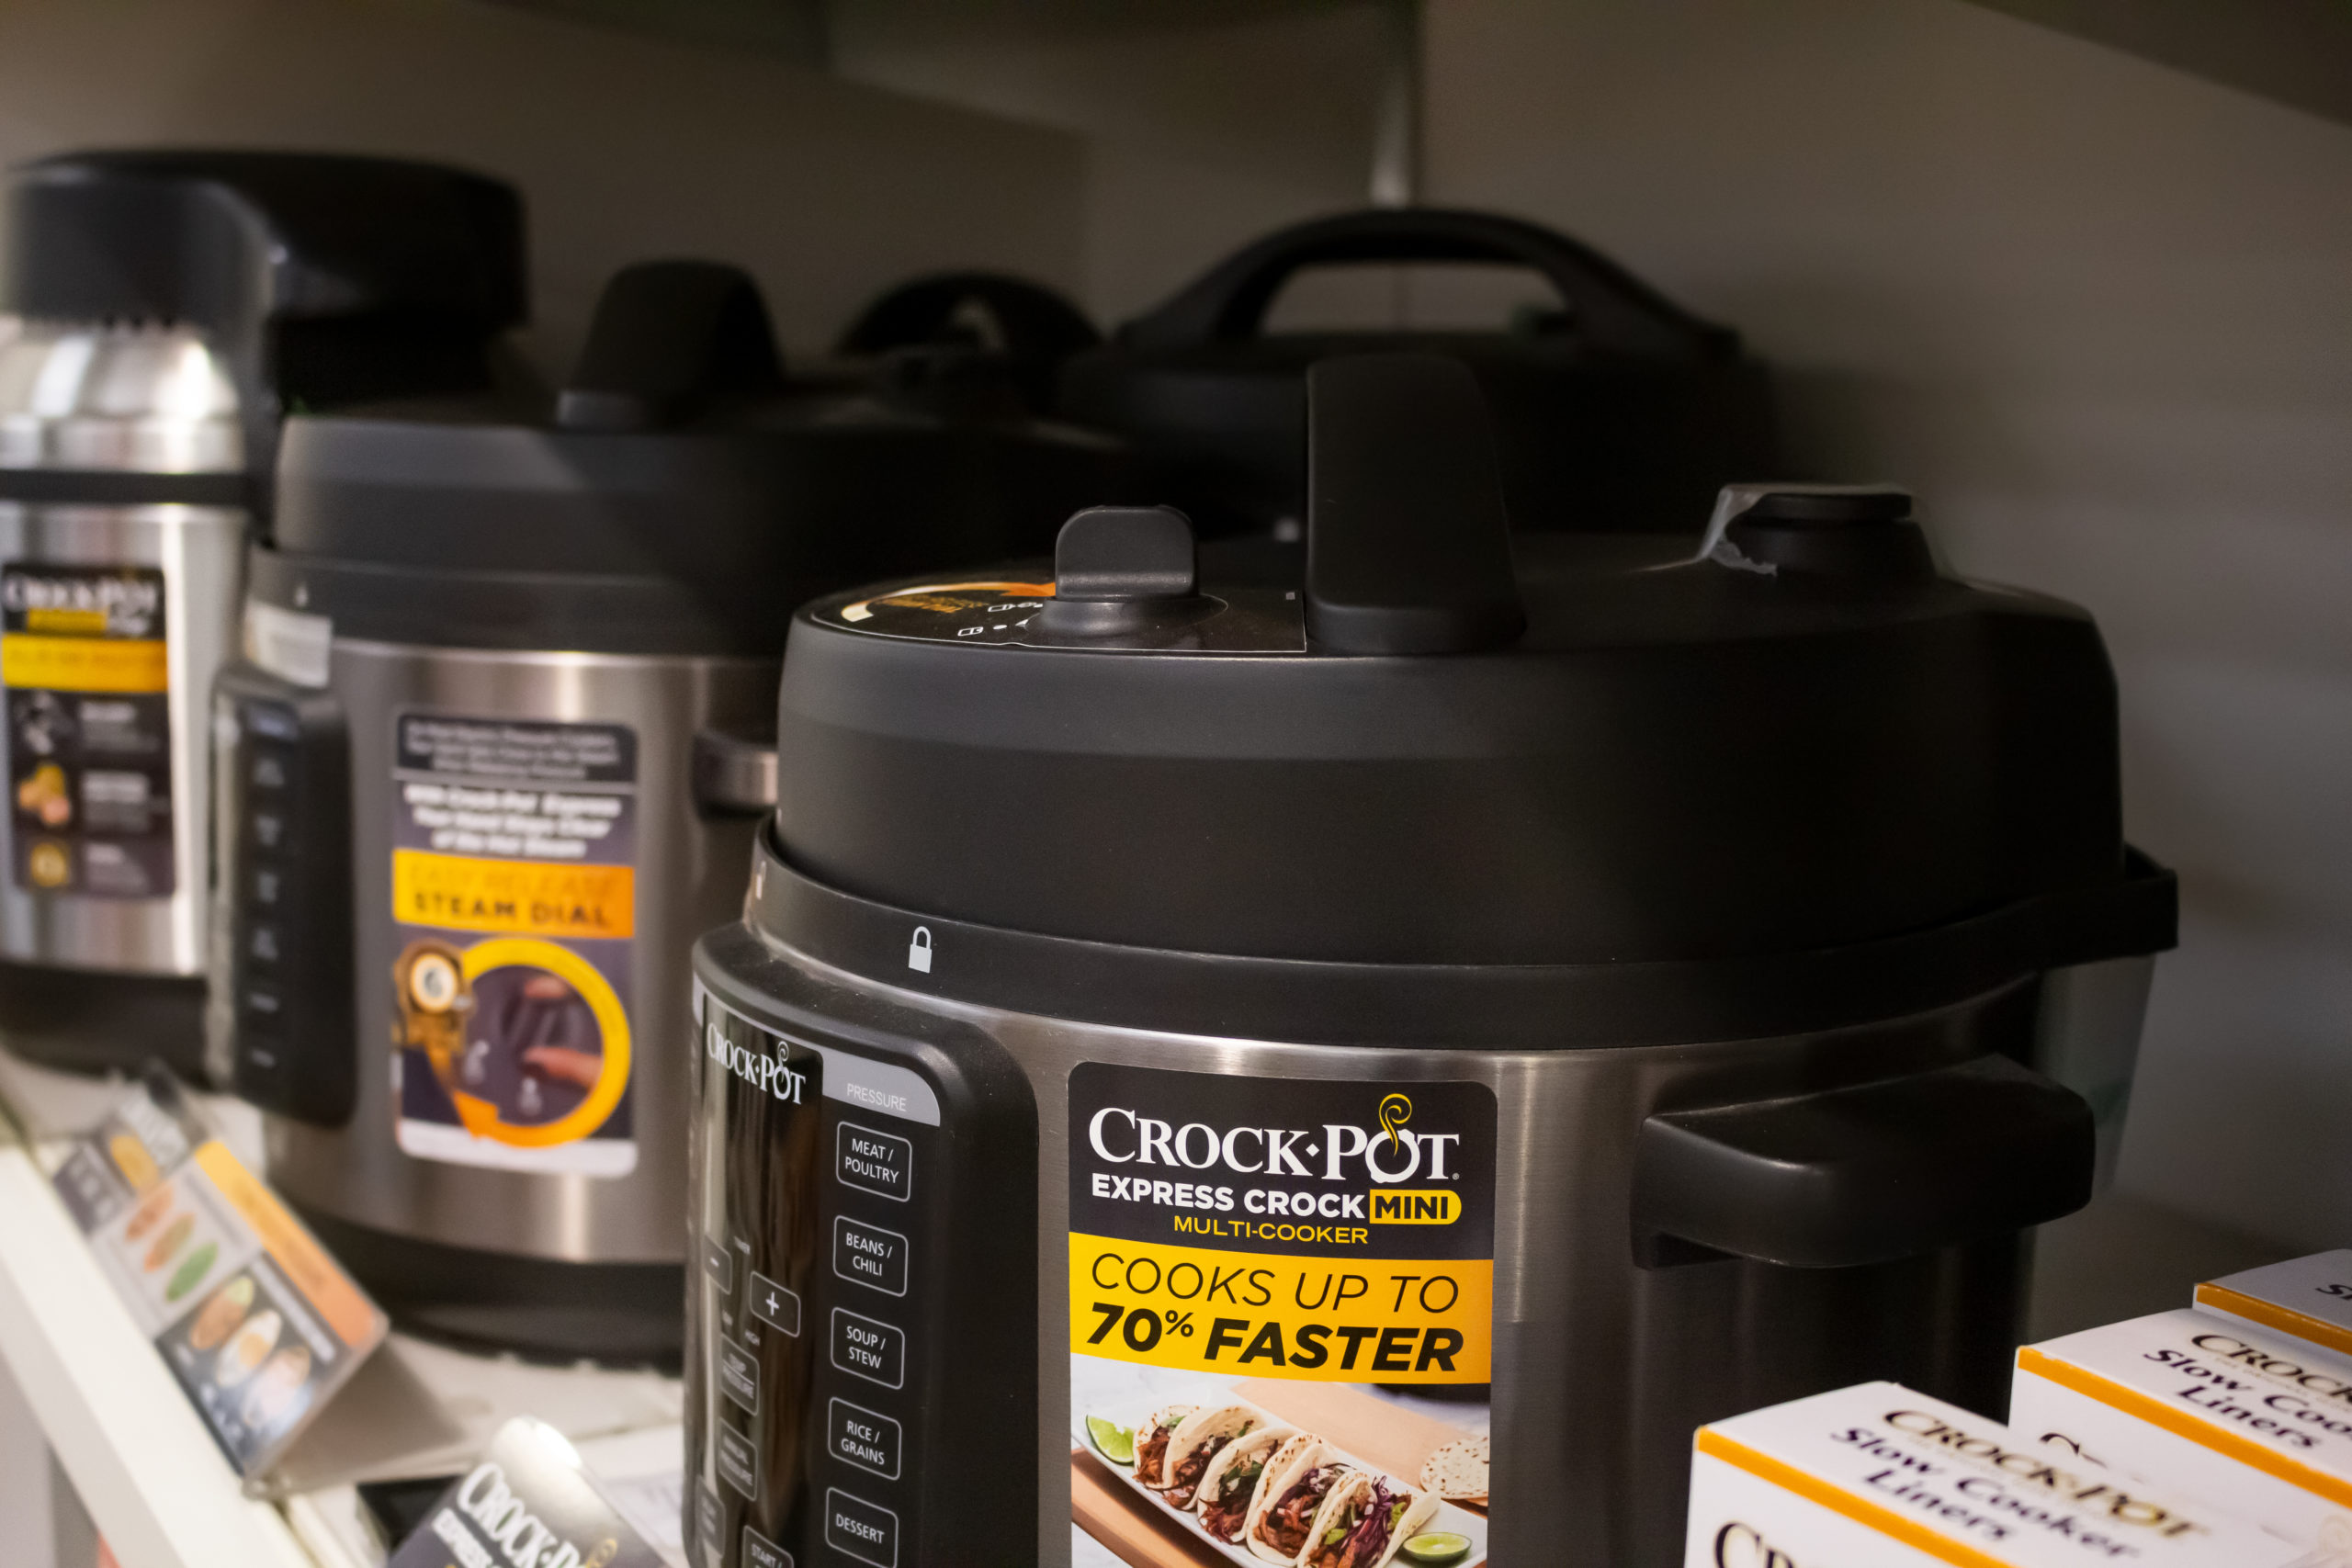 Crock-Pot 6-Quart Express Crock Multi-Cookers Recalled by Sunbeam